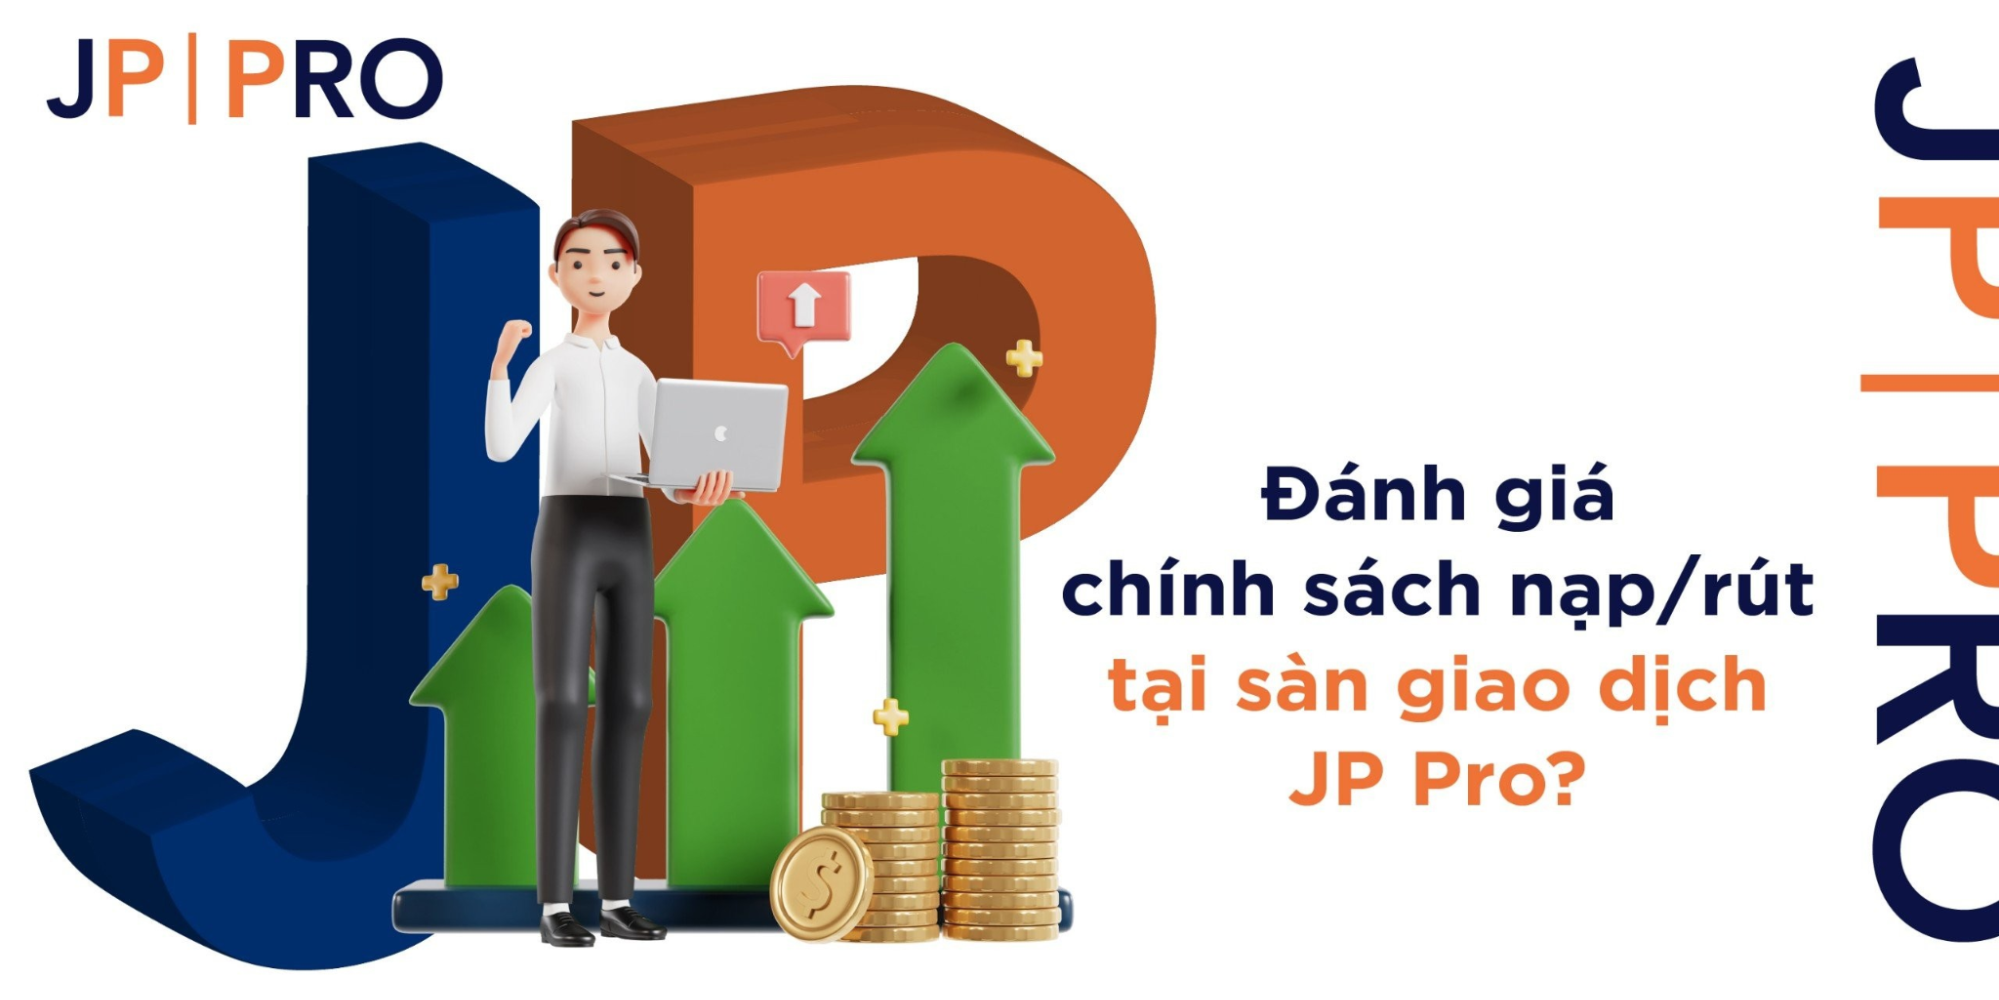 Đánh giá chính sách nạp/rút tại sàn giao dịch JP Pro?